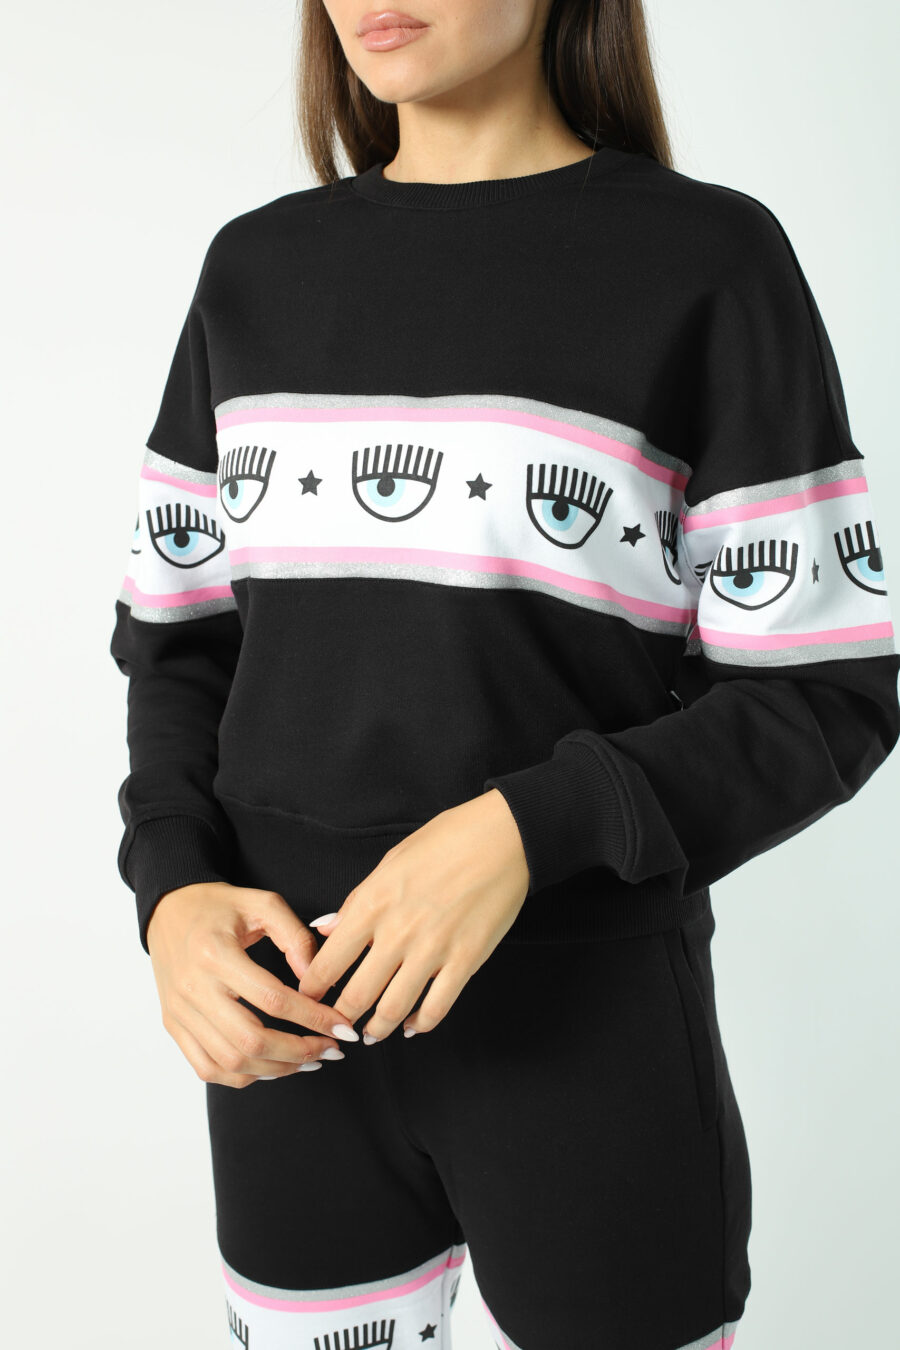 Schwarzes Sweatshirt mit Augenlogo auf Band - Fotos 2783